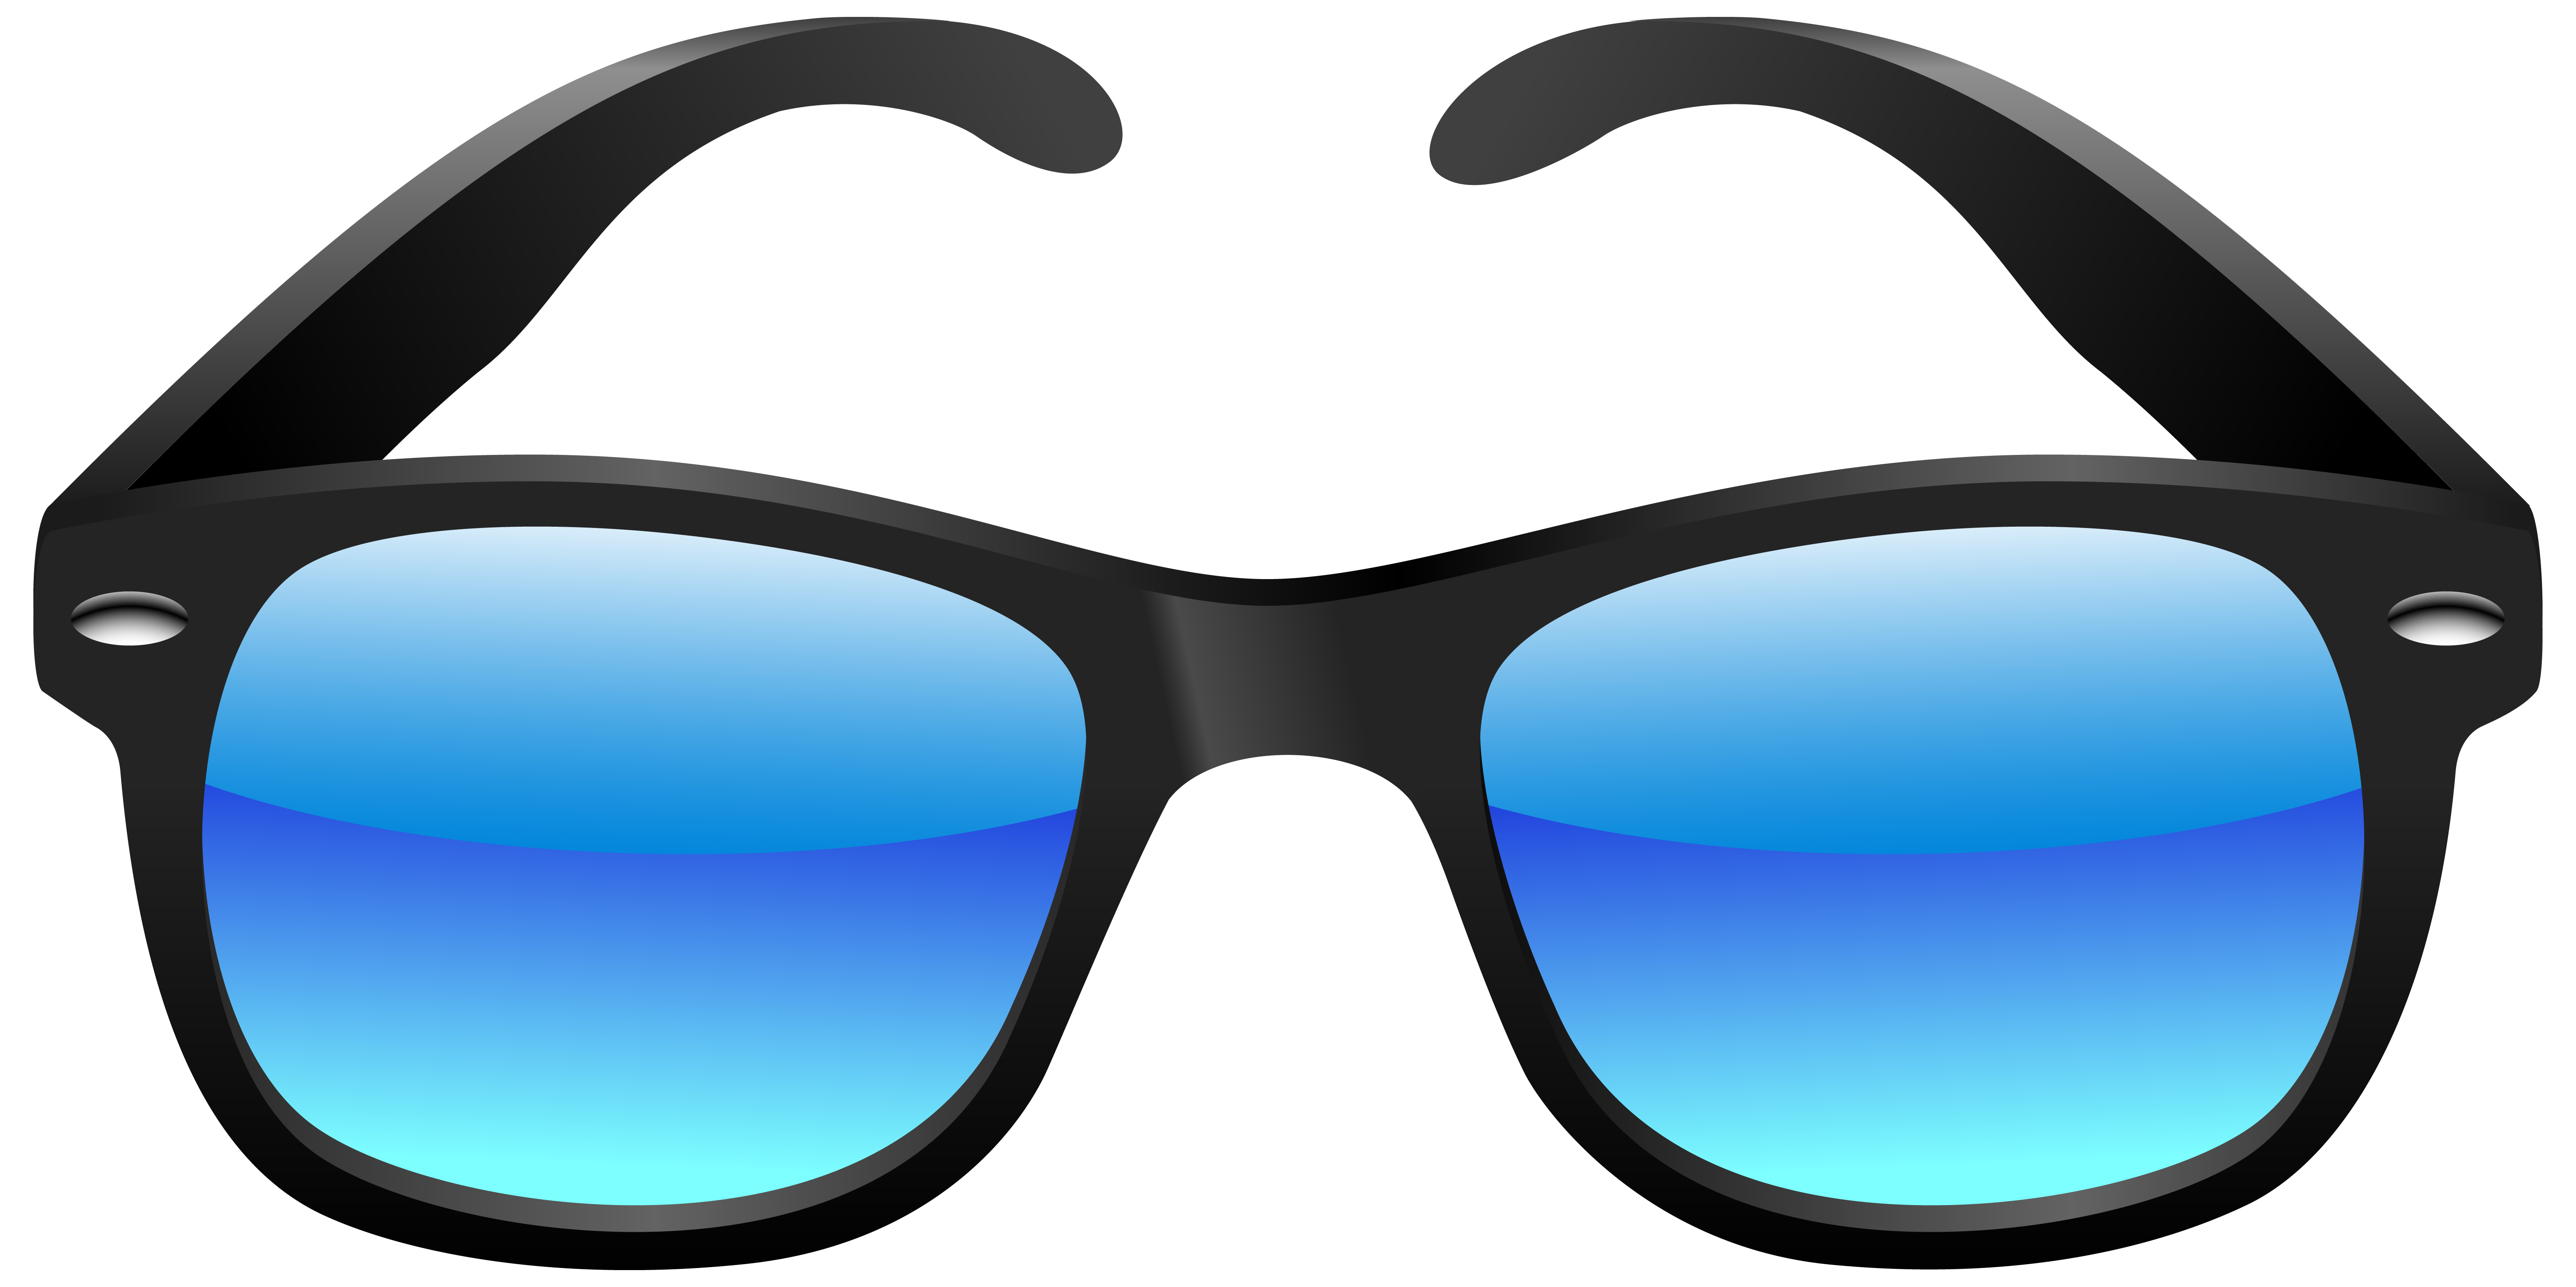 Goggles clipart pool item. Clip art of sunglasses